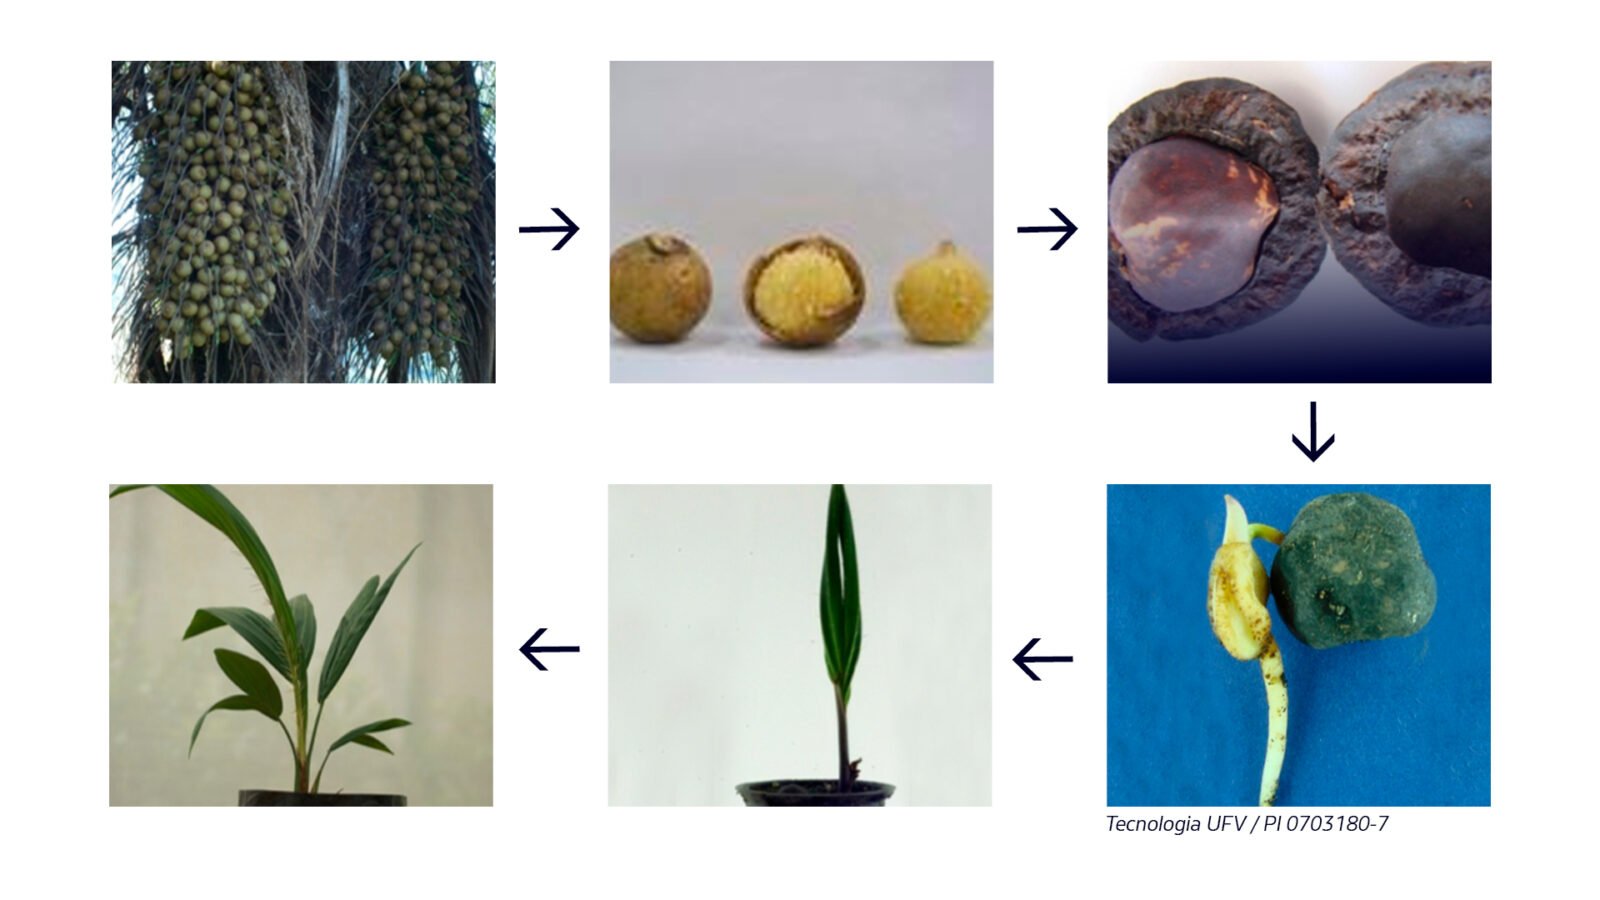 Figura 2. Sequencia para obtenção de sementes de macaúba pré-germinadas e fases em pré-viveiro e viveiro. Fonte: REMAPE 